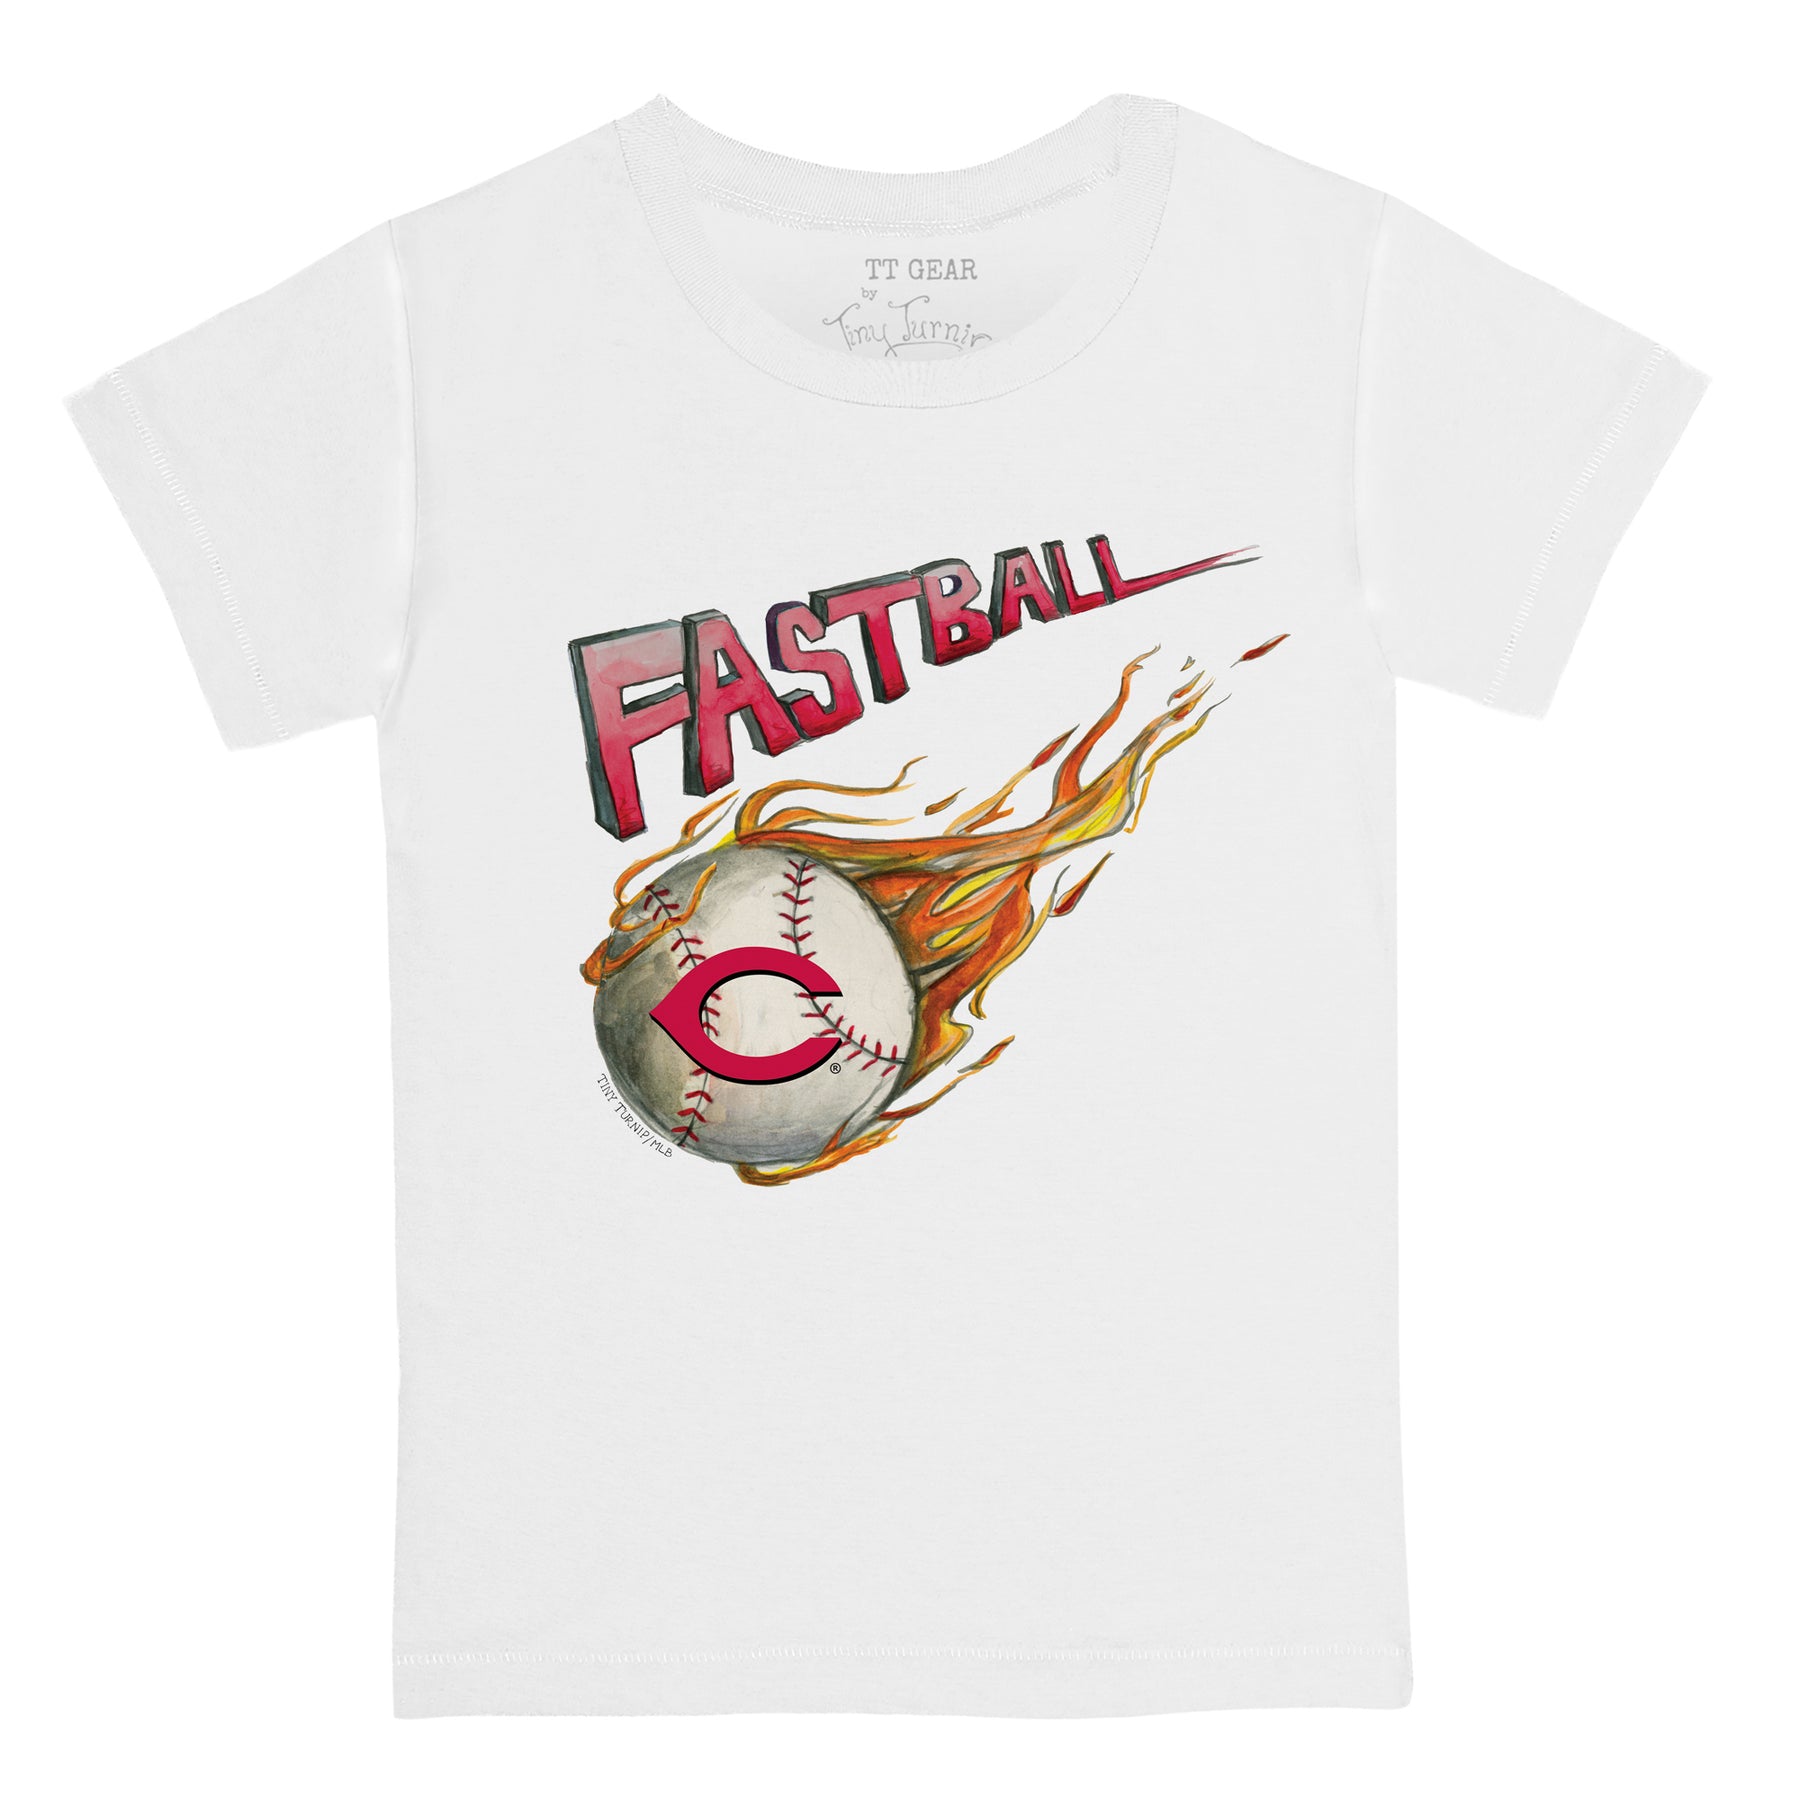 Cincinnati Reds Fastball Tee Shirt